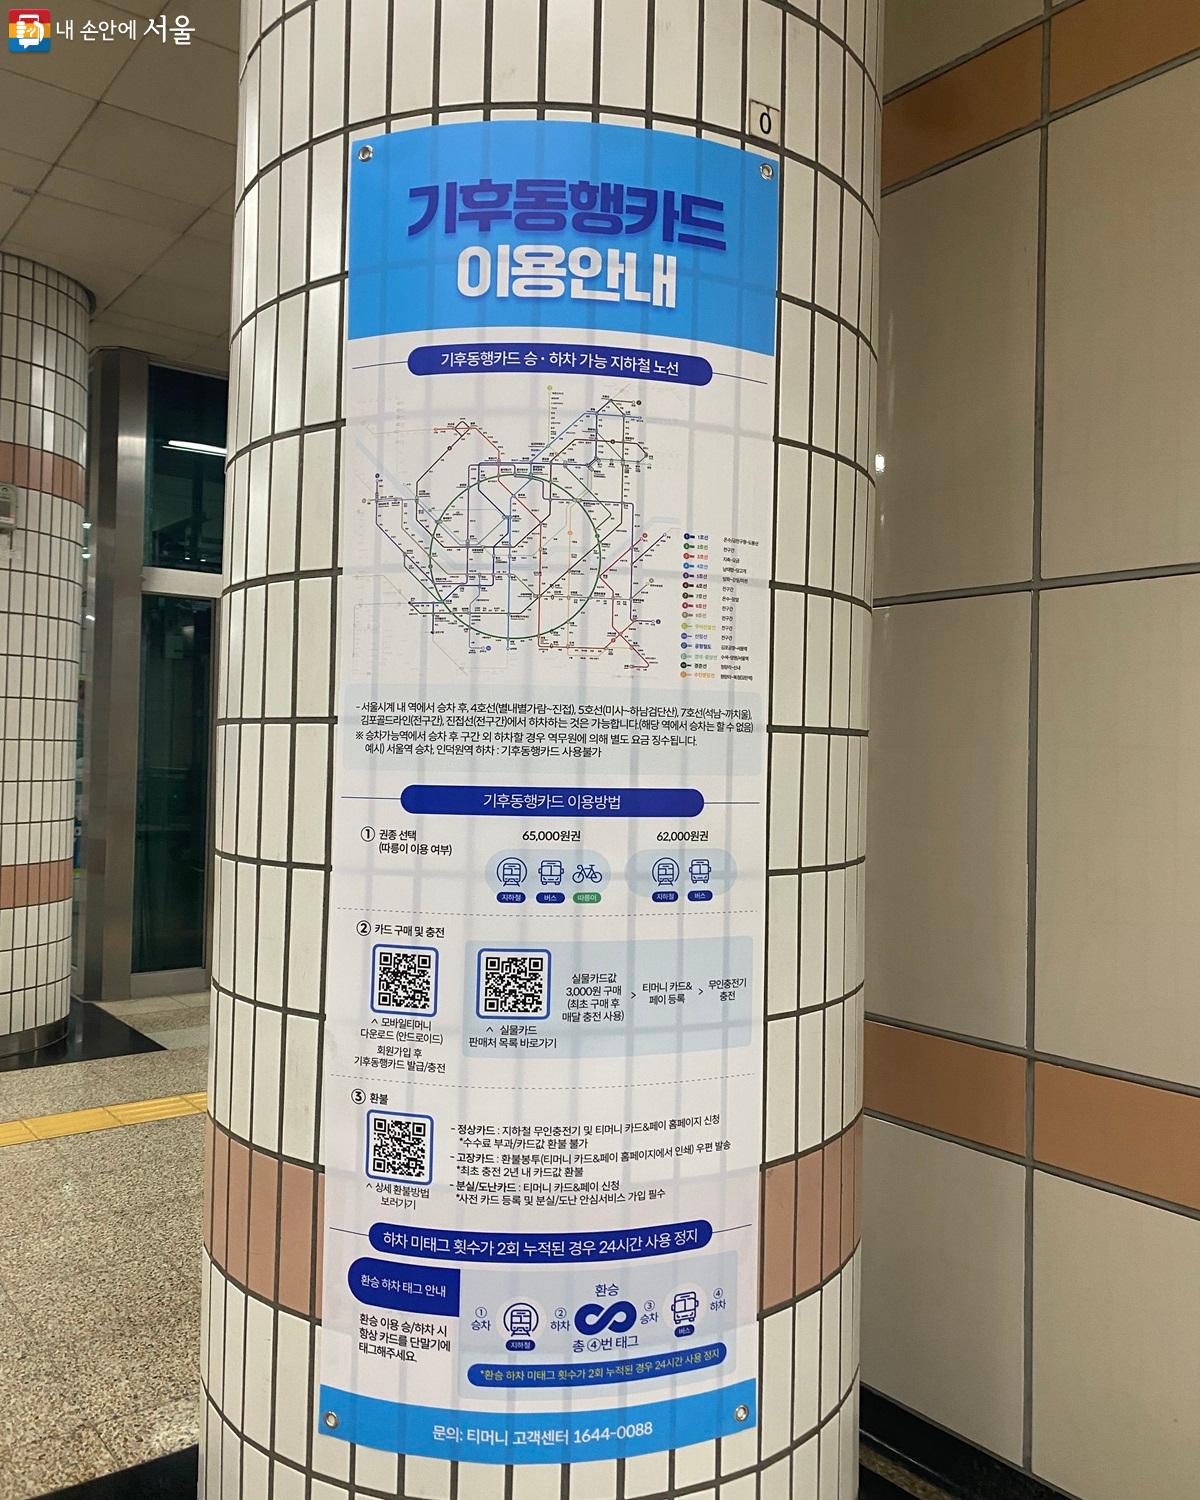 지하철역 내에 기후동행카드 안내문이 게시되어 있다. ©강다영